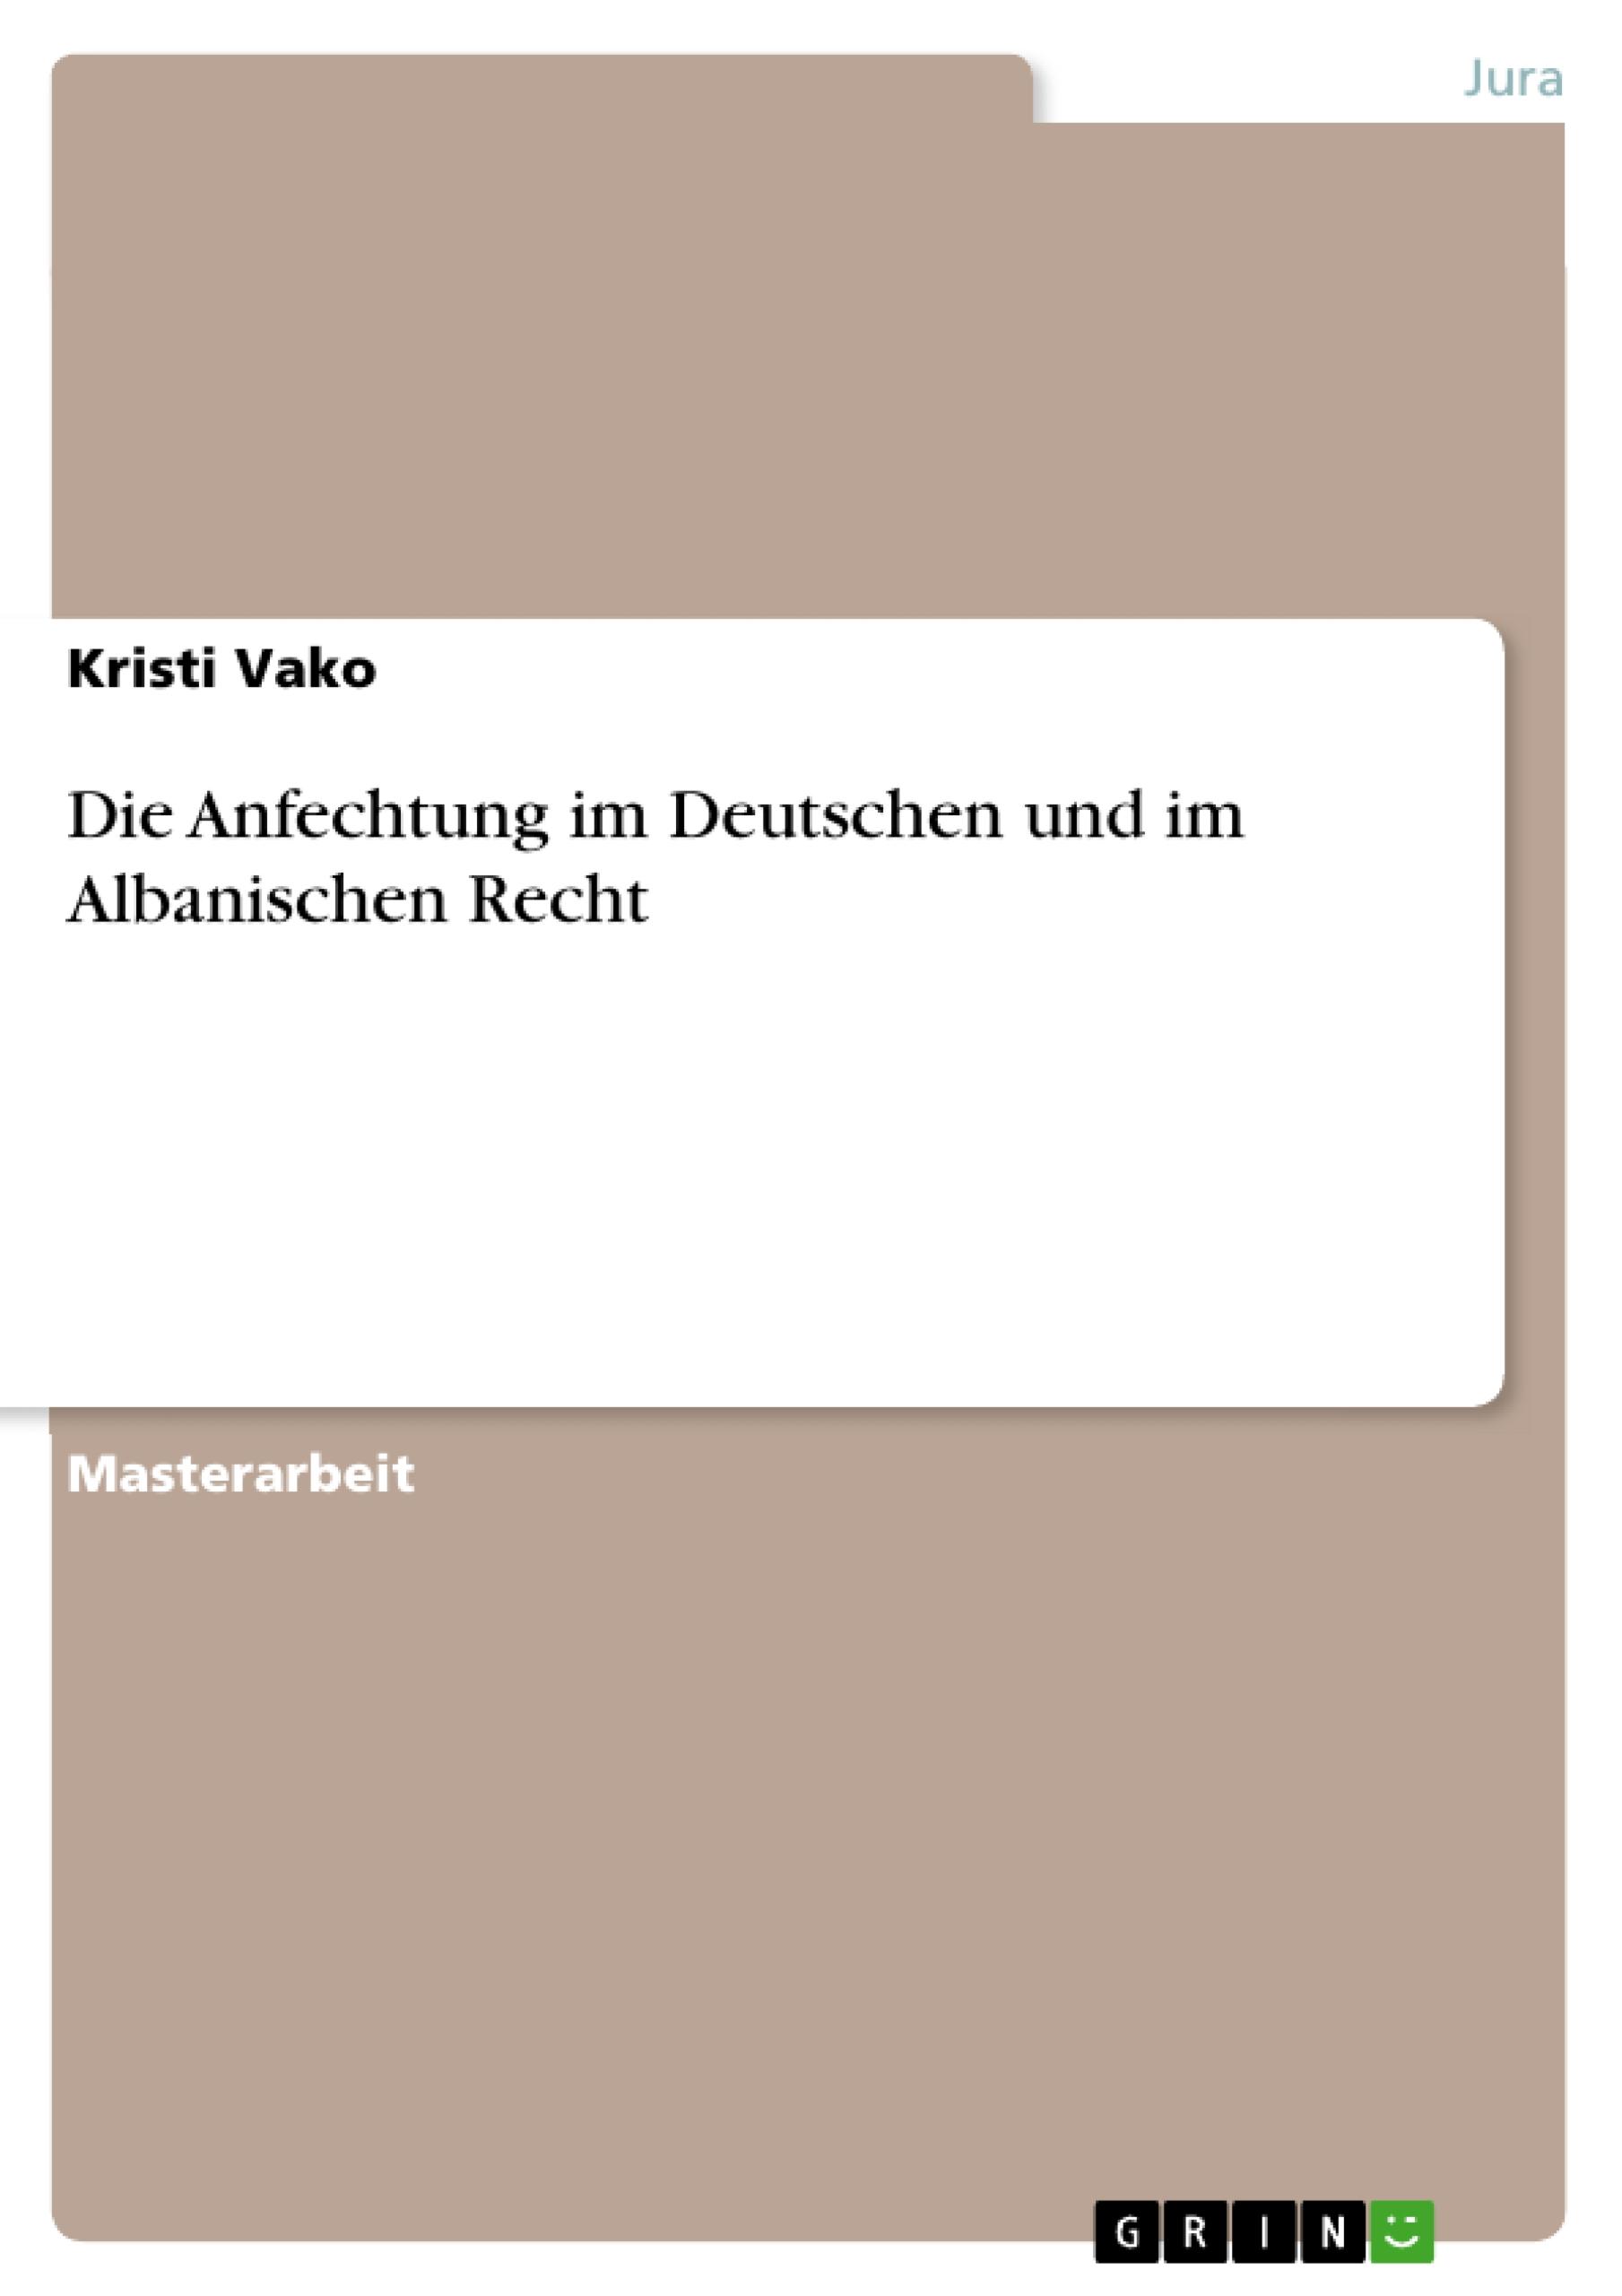 Die Anfechtung im Deutschen und im Albanischen Recht / Kristi Vako / Taschenbuch / Paperback / 80 S. / Deutsch / 2018 / GRIN Verlag / EAN 9783668795006 - Vako, Kristi